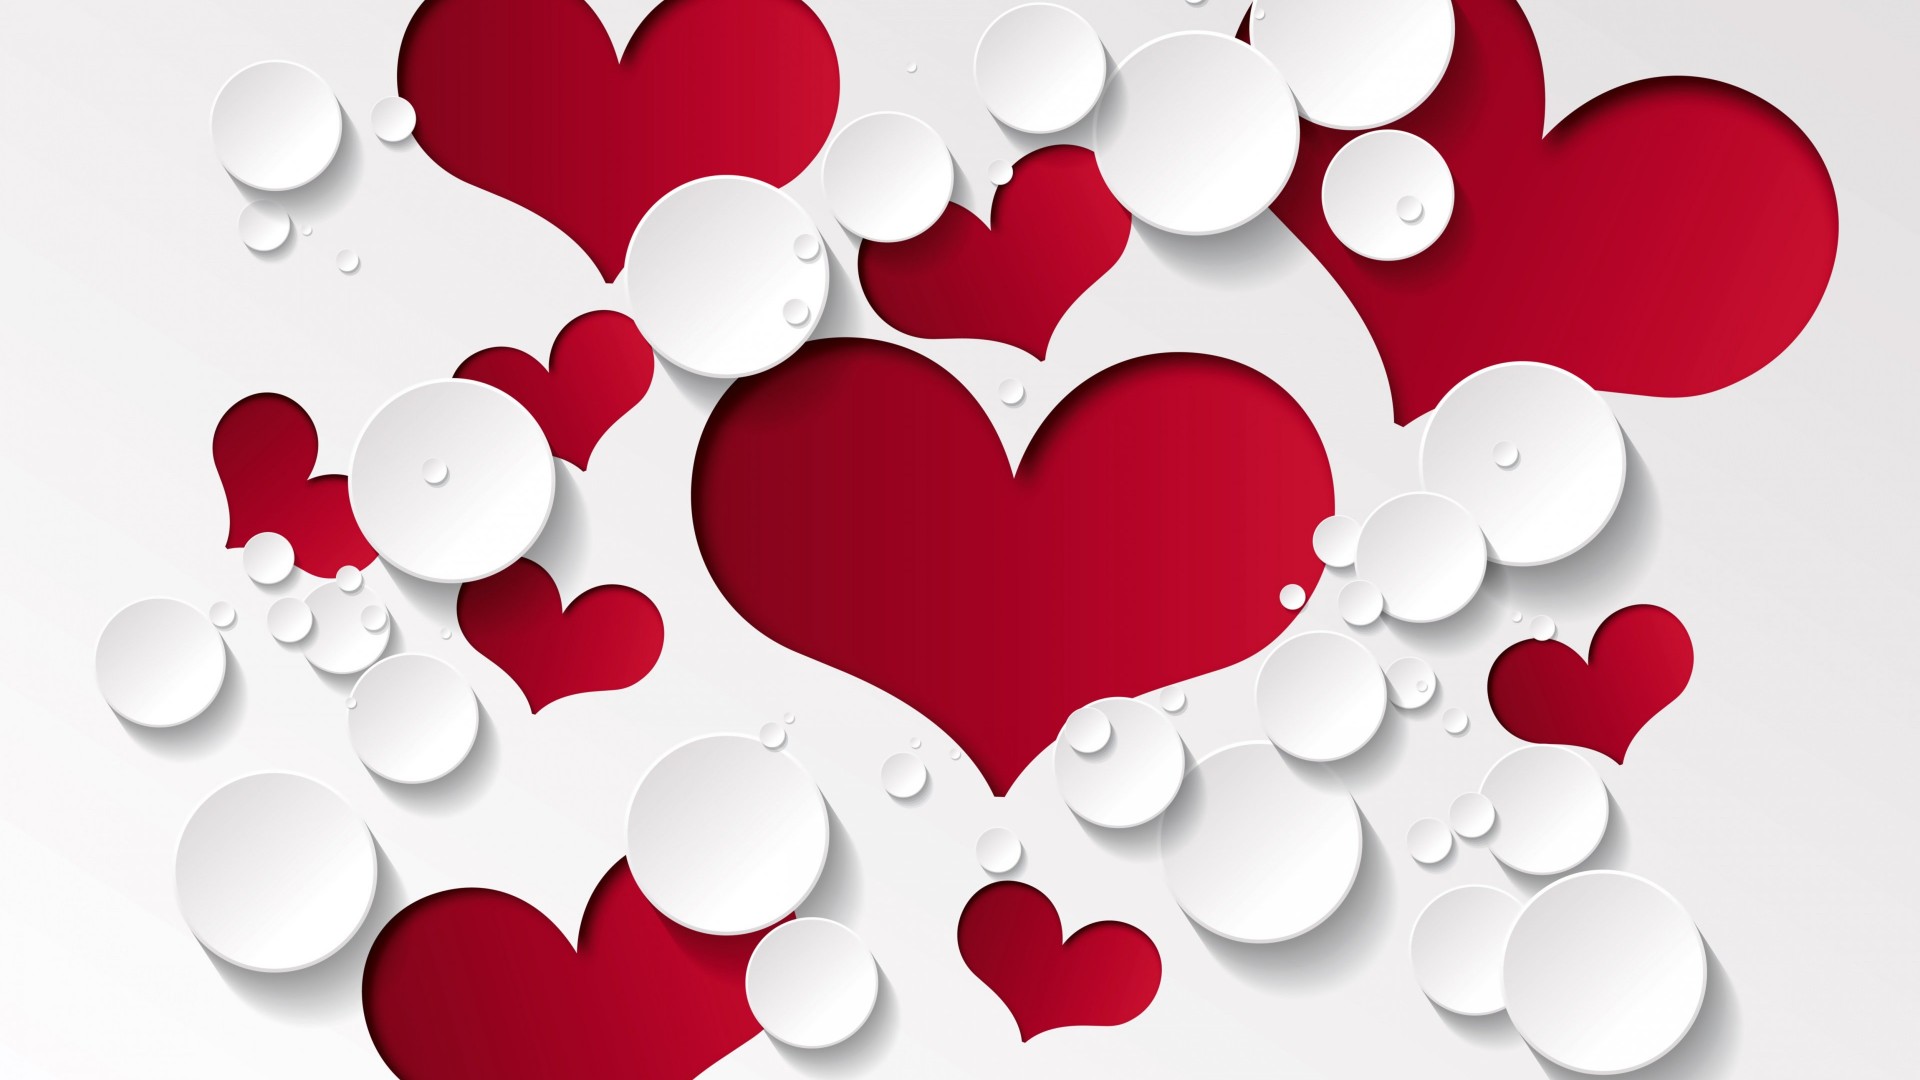 Love Heart Shaped Pattern Wallpaper for Desktop 1920x1080